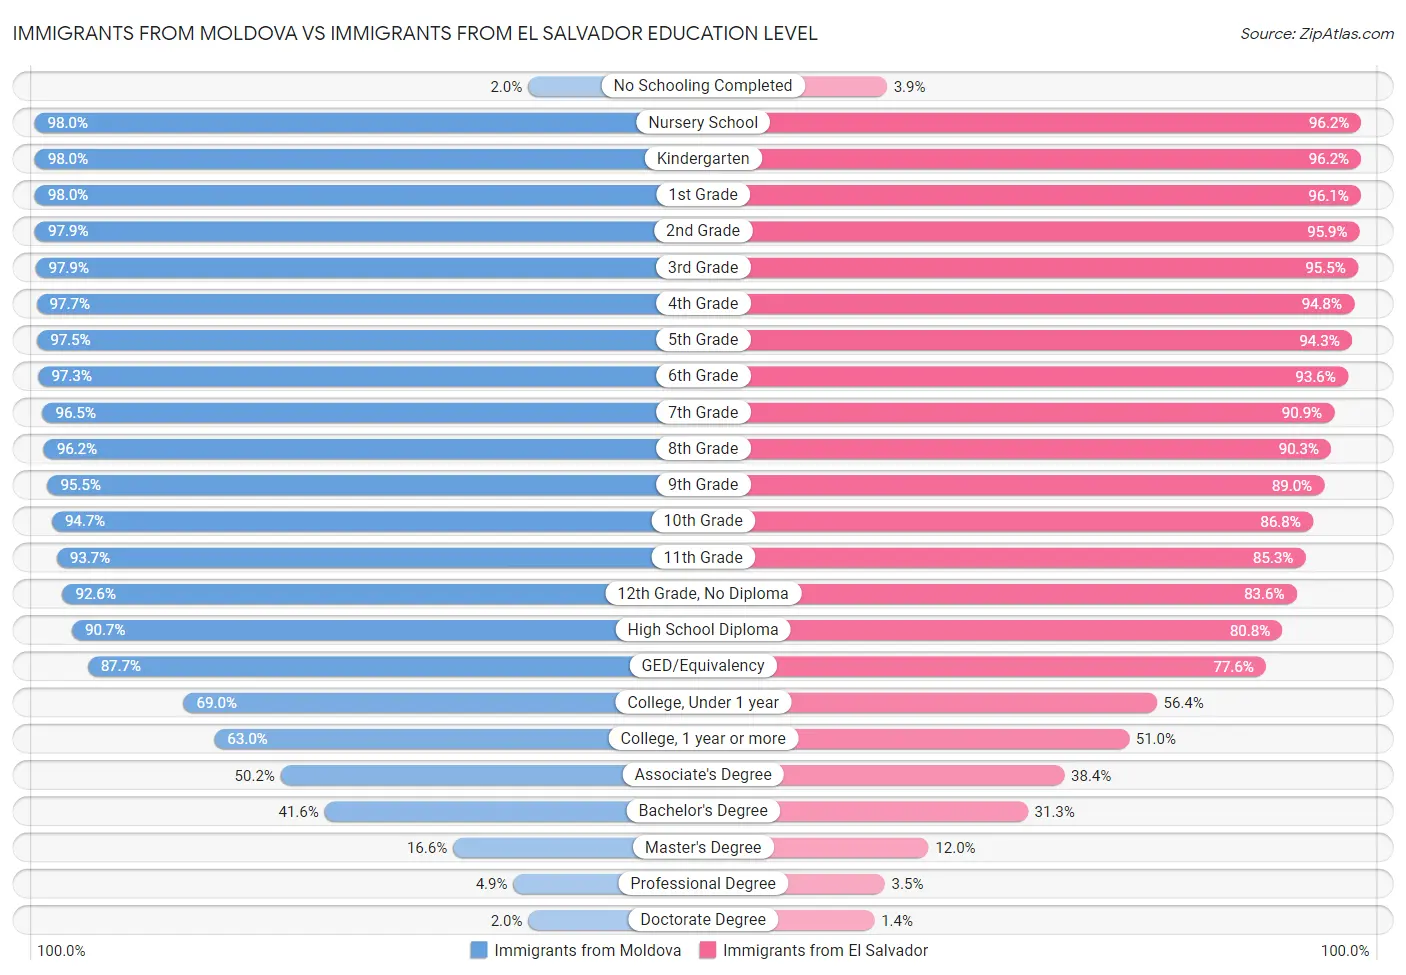 Immigrants from Moldova vs Immigrants from El Salvador Education Level